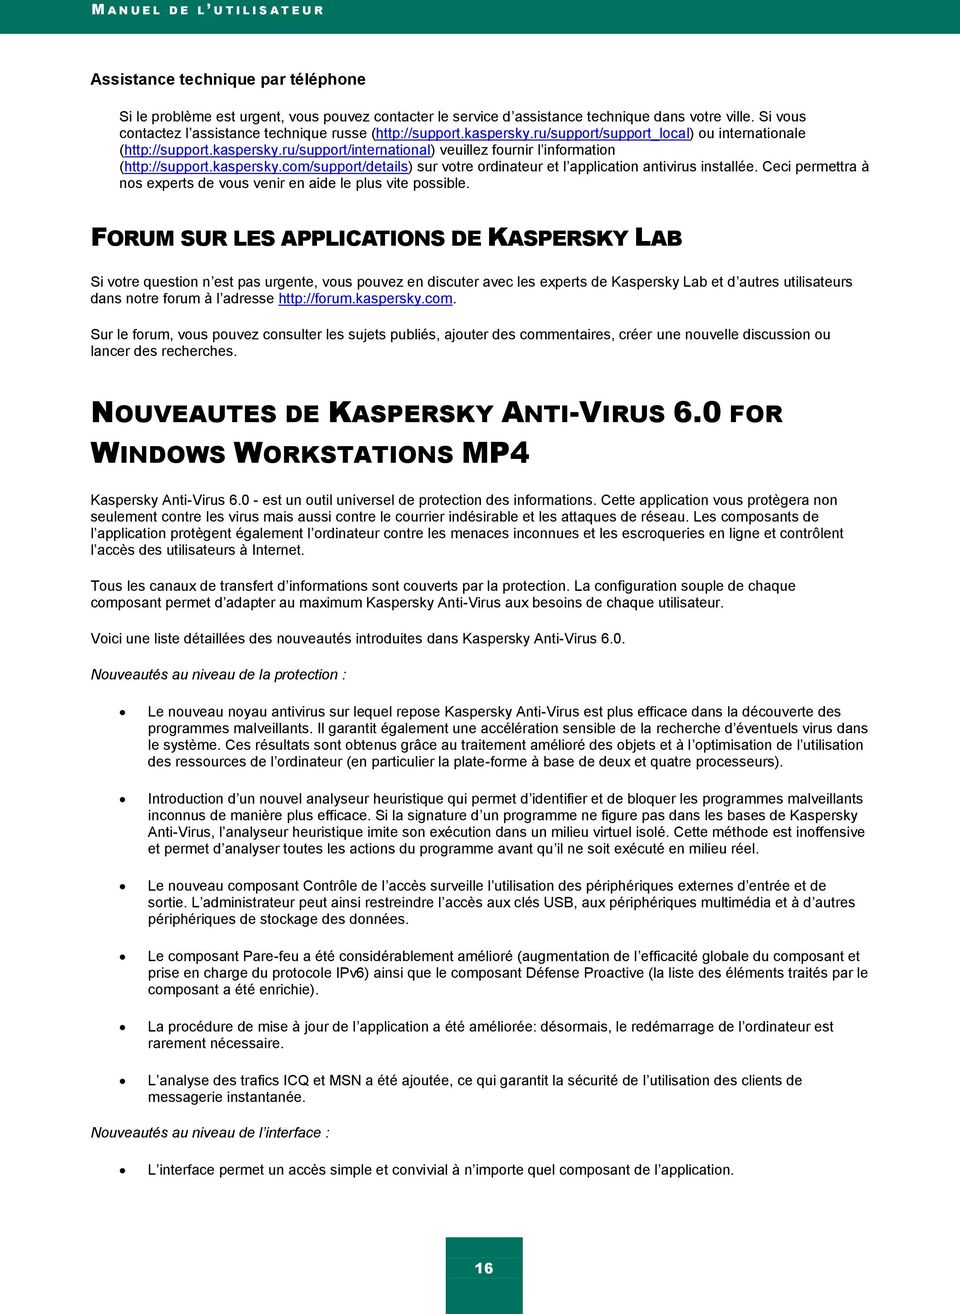 kaspersky.com/support/details) sur votre ordinateur et l application antivirus installée. Ceci permettra à nos experts de vous venir en aide le plus vite possible.